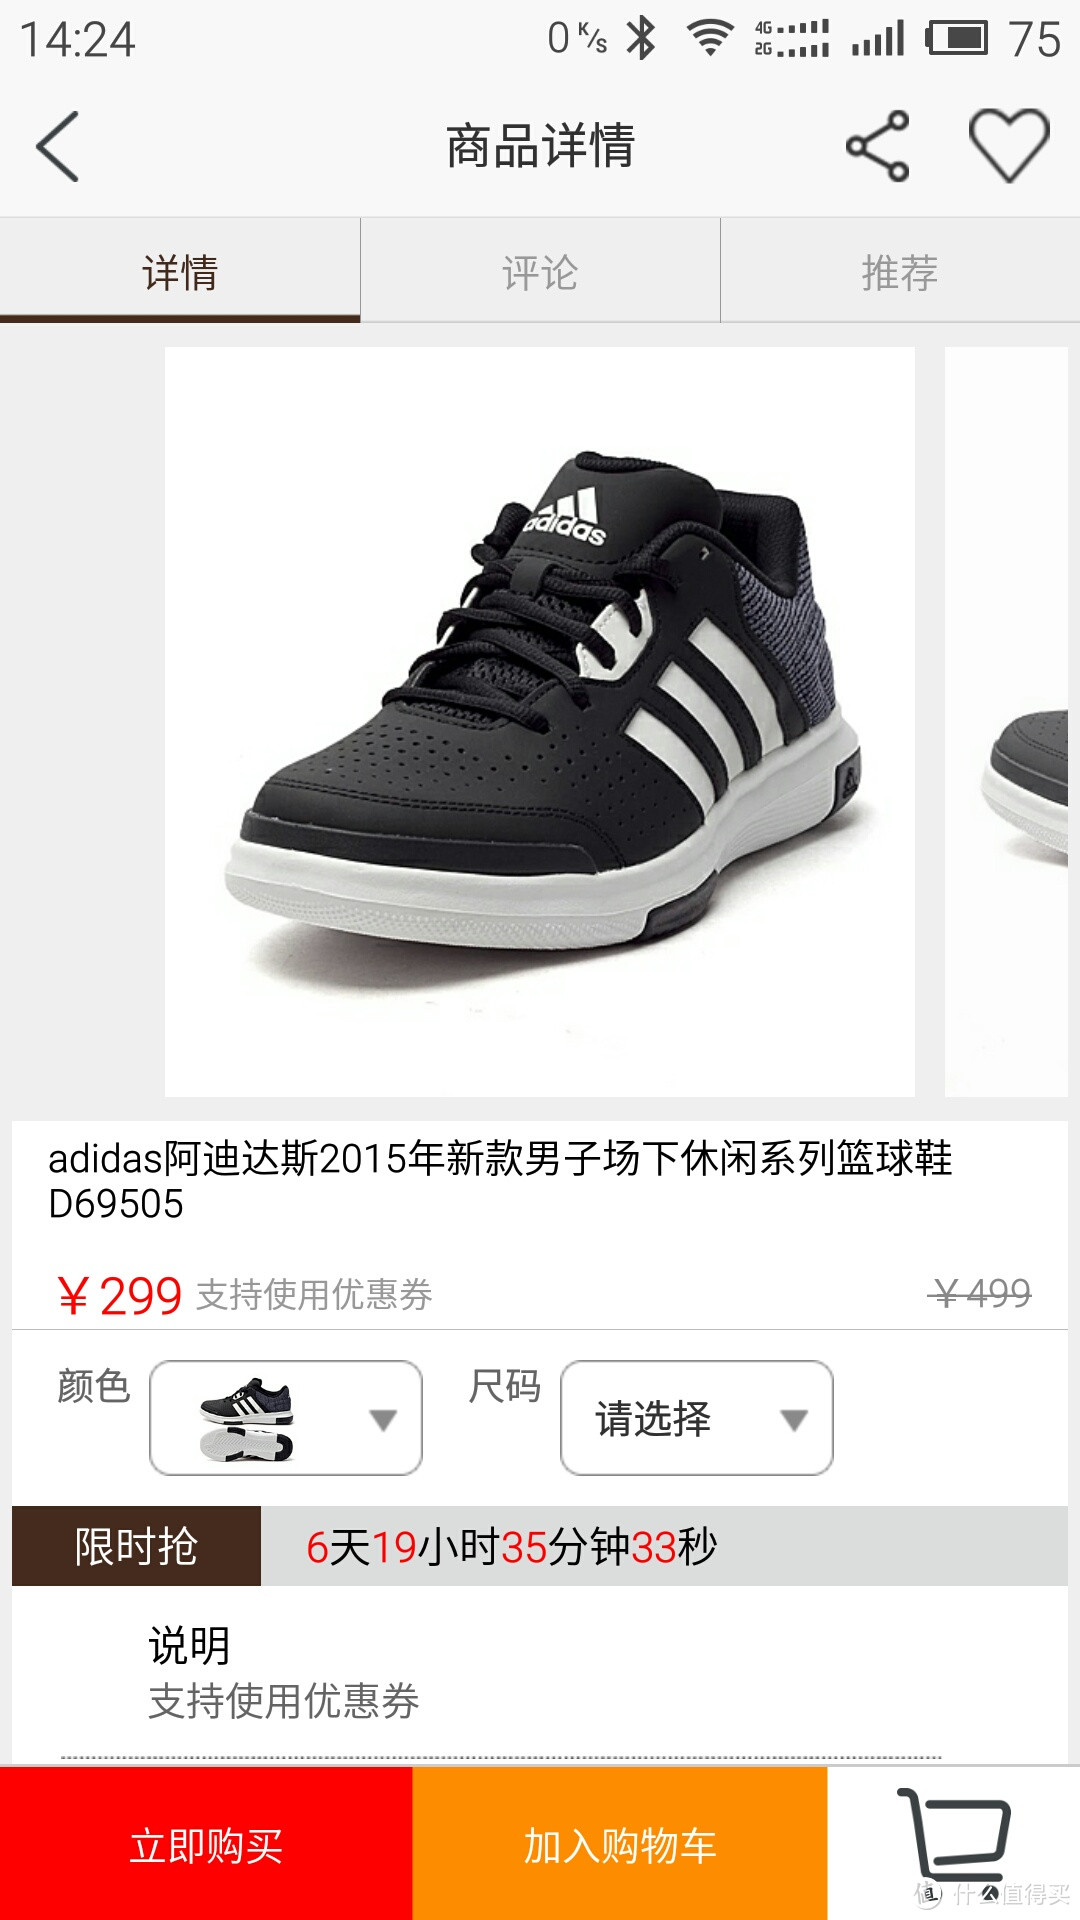 200也可以买阿迪--adidas阿迪达斯2015年新款男子场下休闲系列篮球鞋